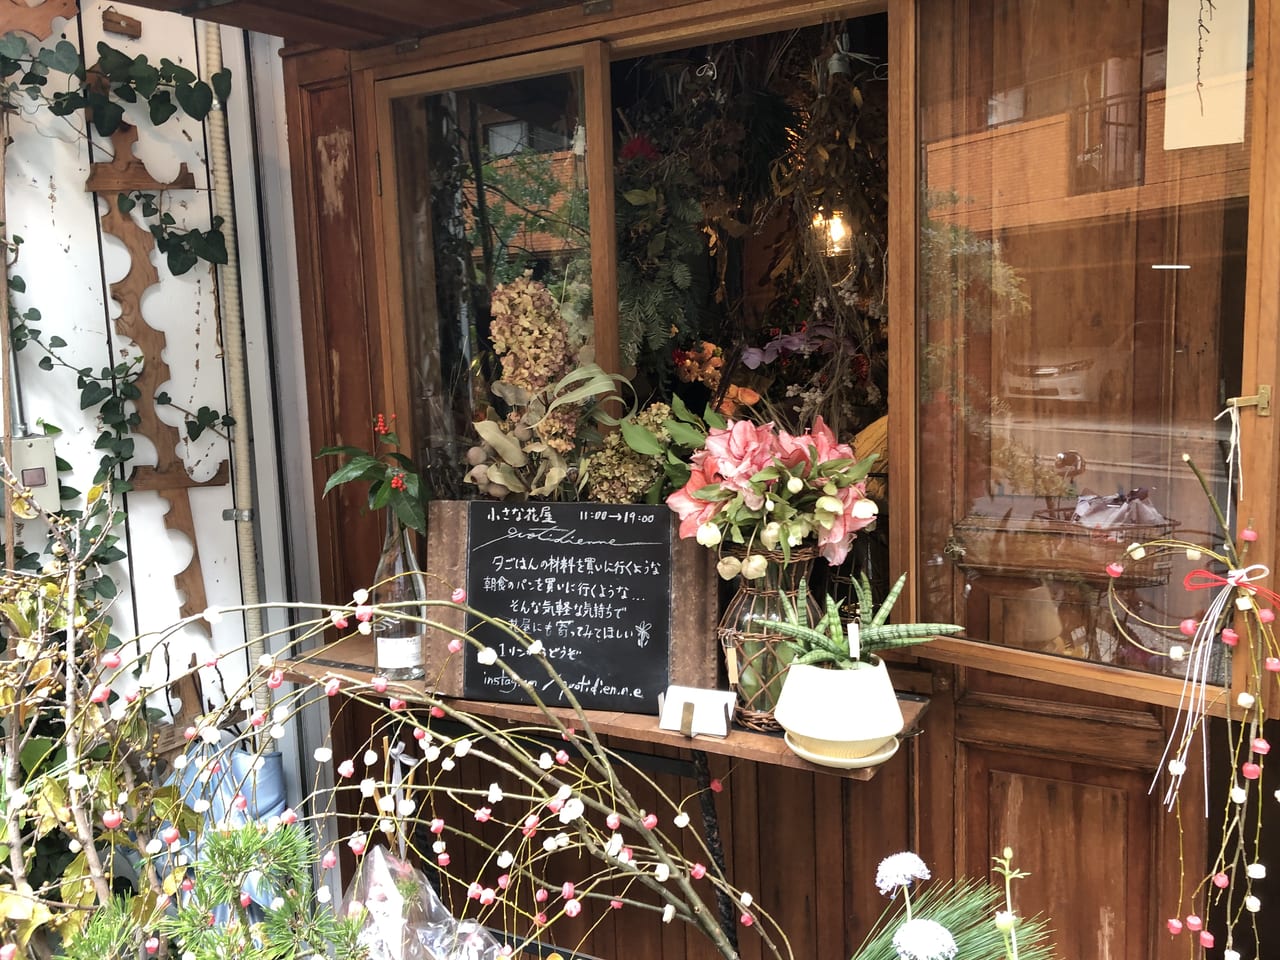 大阪市西区 新町 ライオンキッチンさんの南口にある小さな花屋quotidienneさんが年12月31日で閉店されます 正月用のお花や飾りもまだ少し販売されています 号外net 大阪市西区